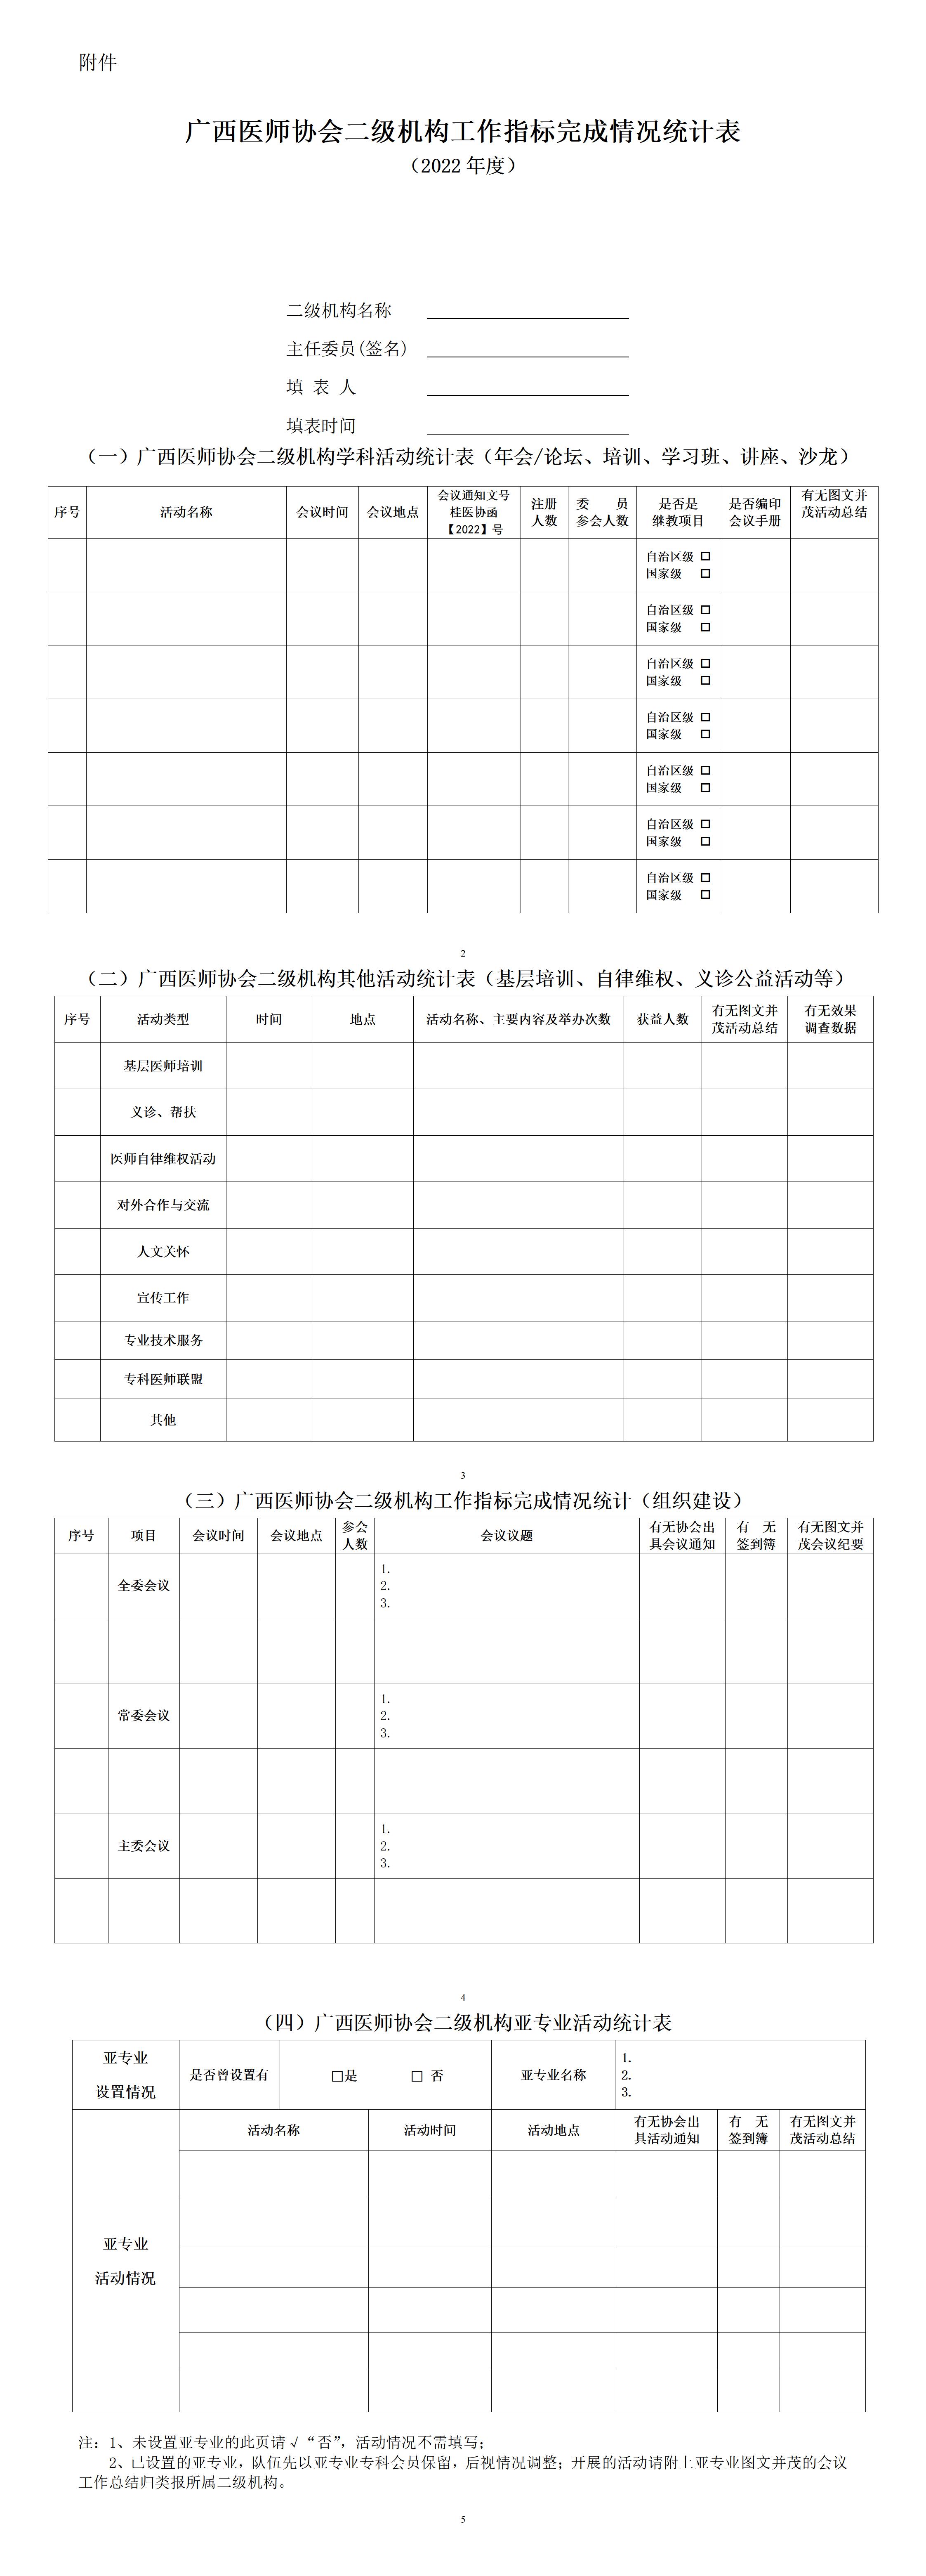 附件1 广西医师协会二级机构工作指标完成情况统计表_01.jpg